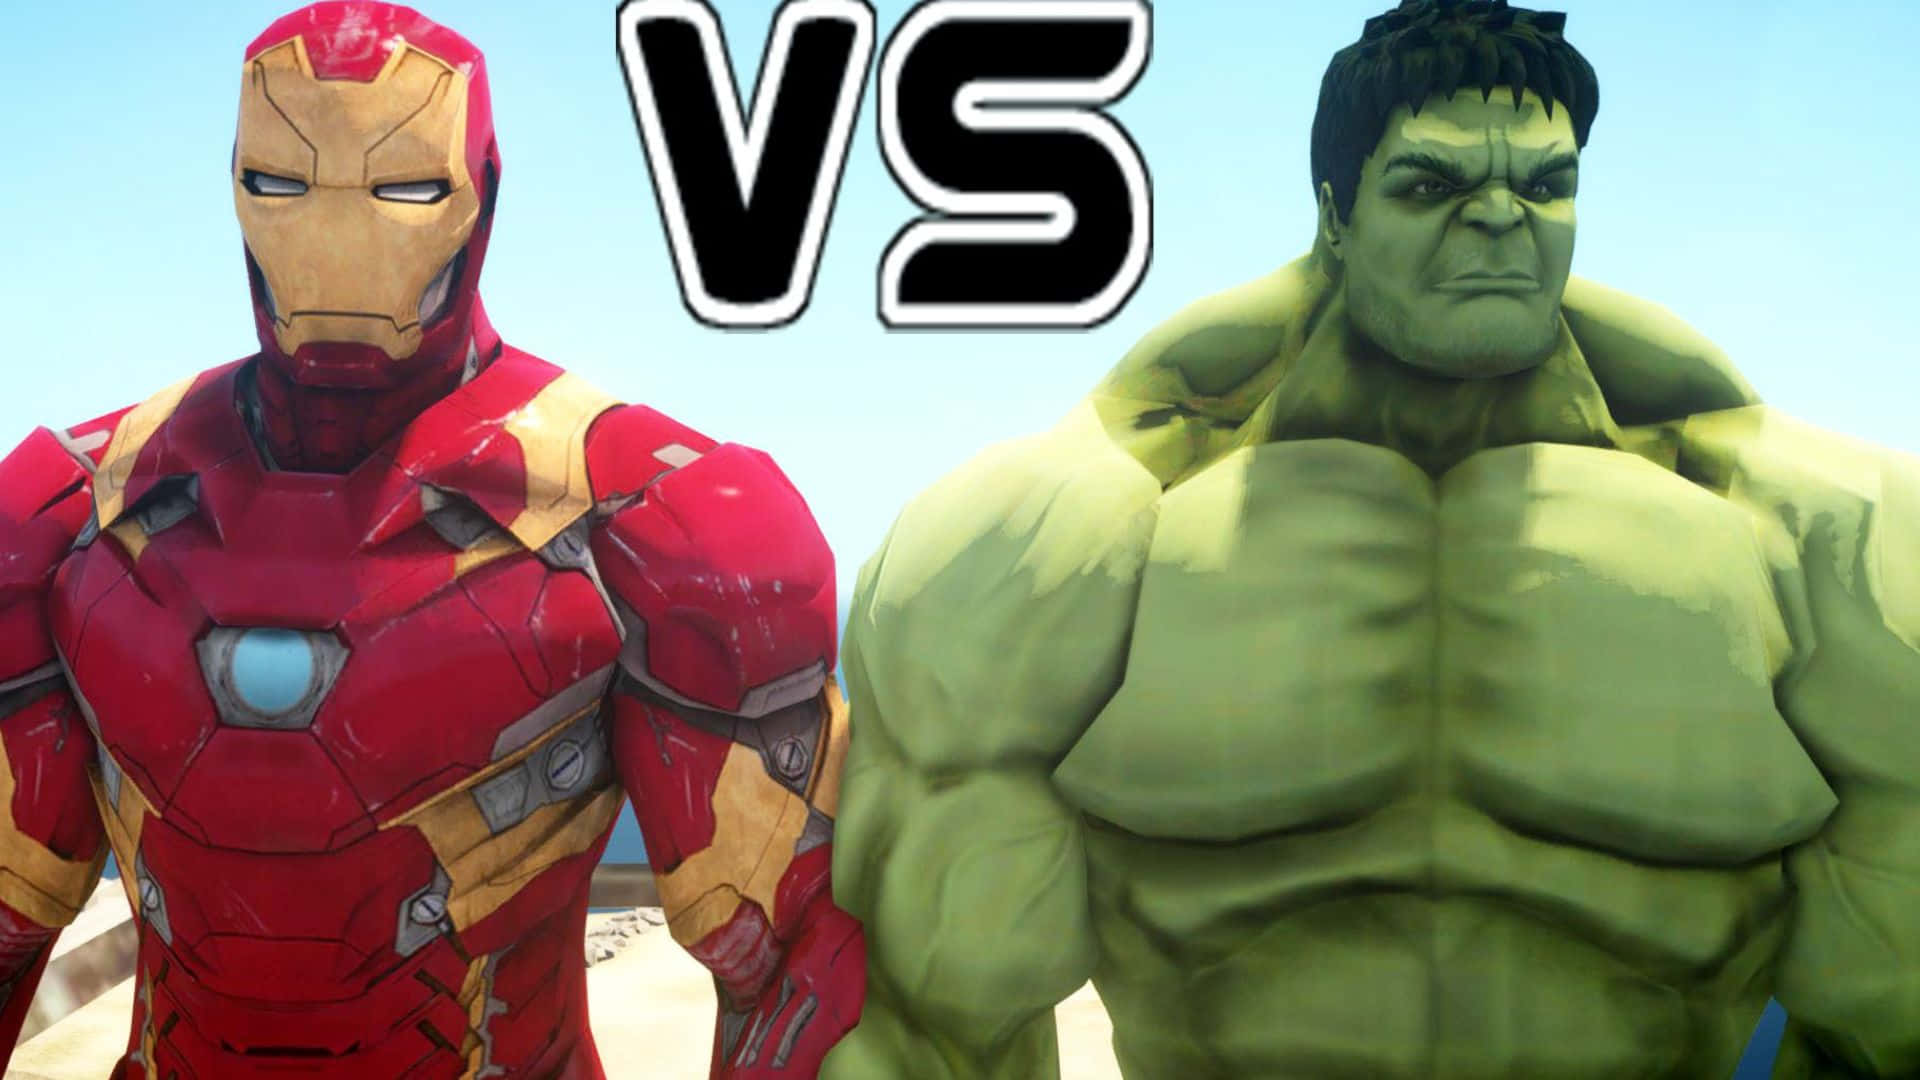 Iron Man and Hulk at War Wallpaper